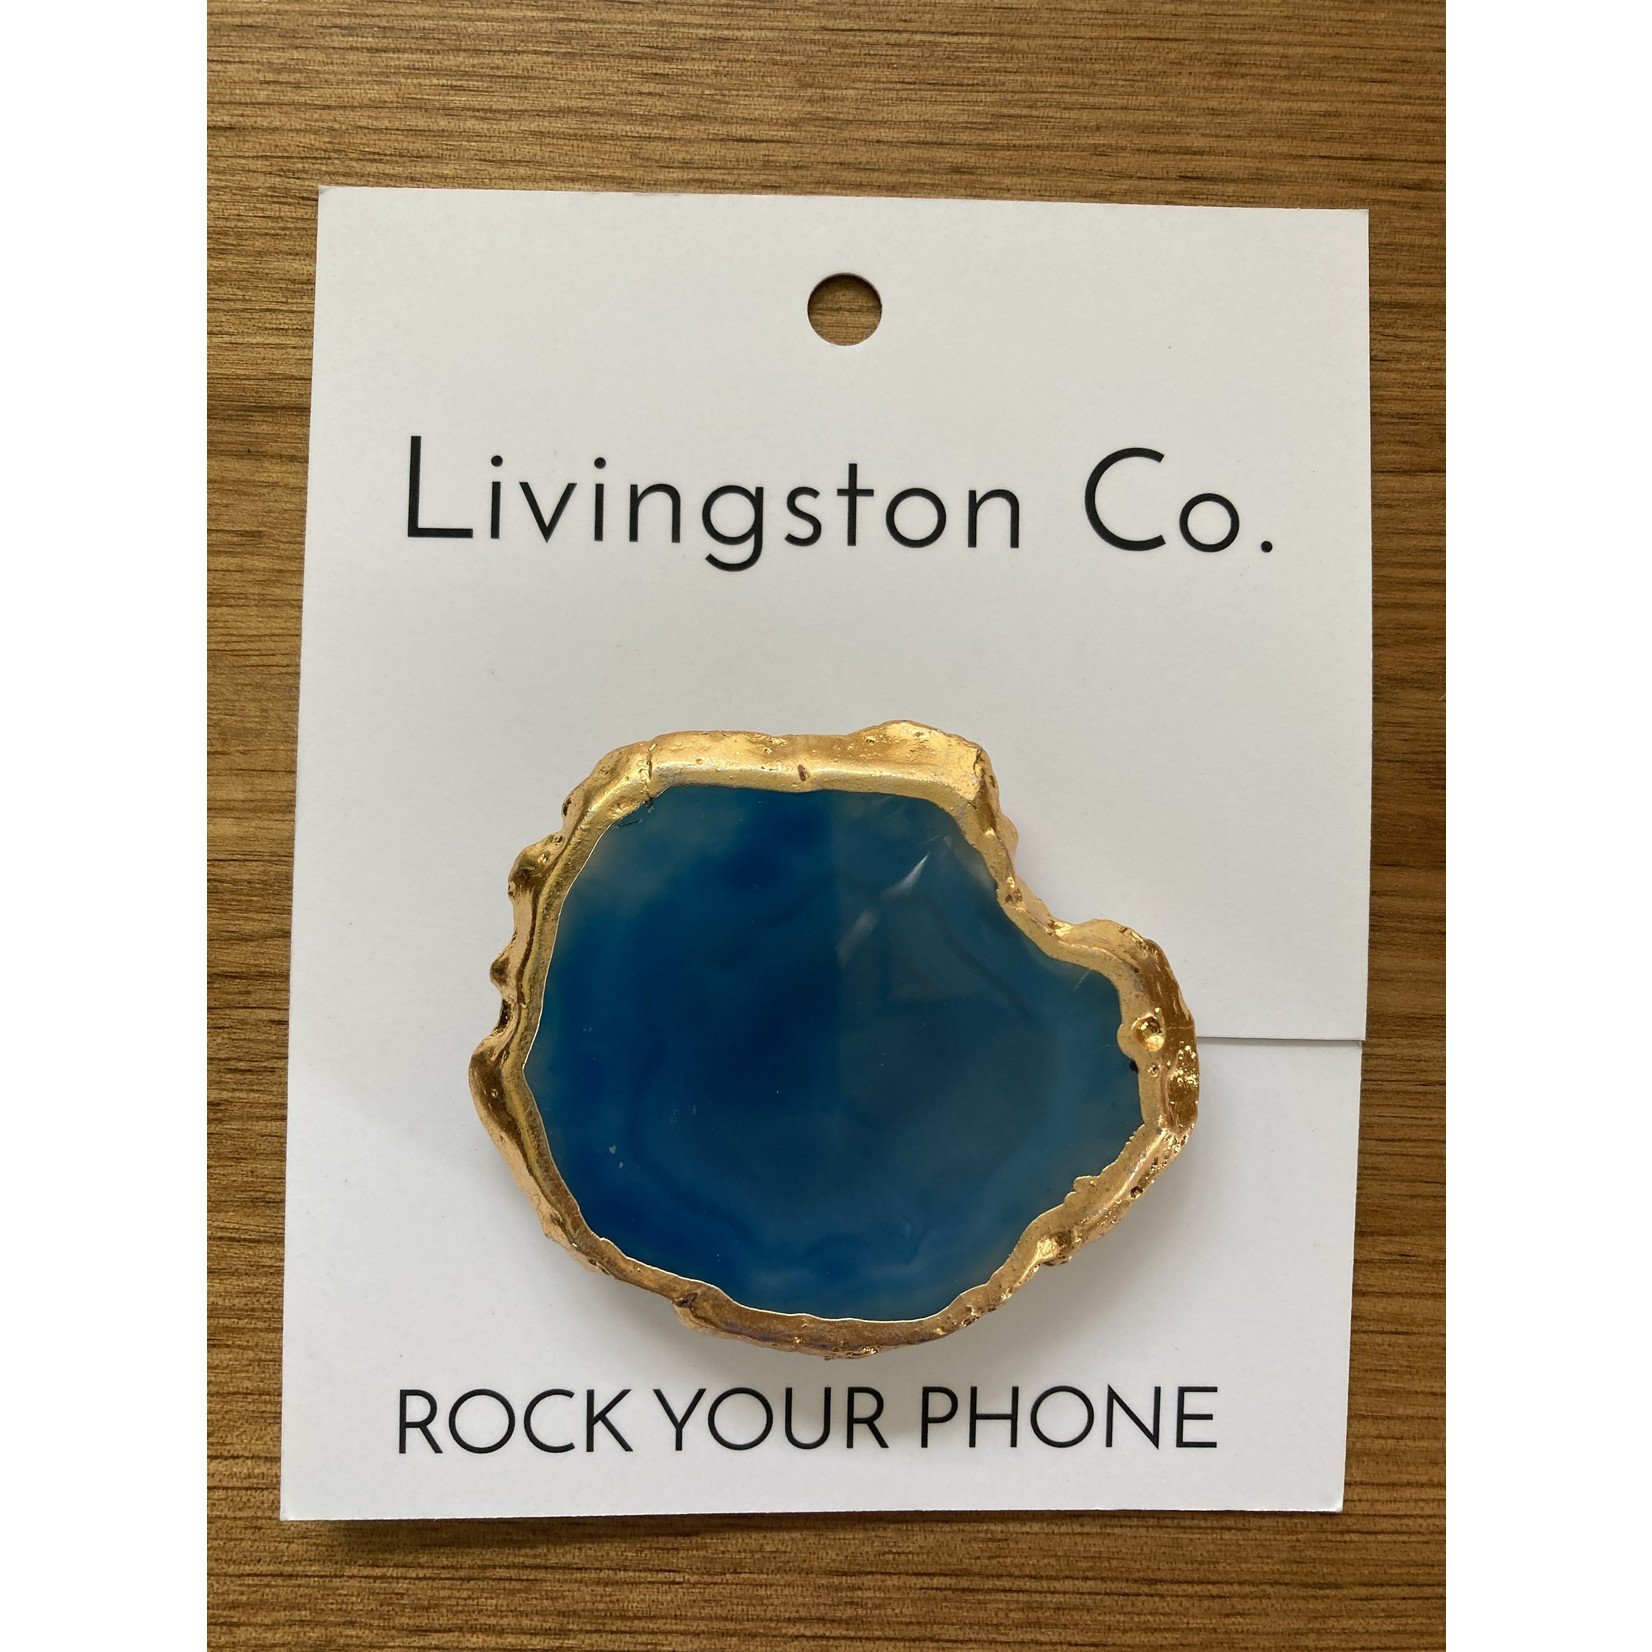 Livingston Co. Rock Your Phone - Splish, Splash, I'm Taking A Bath